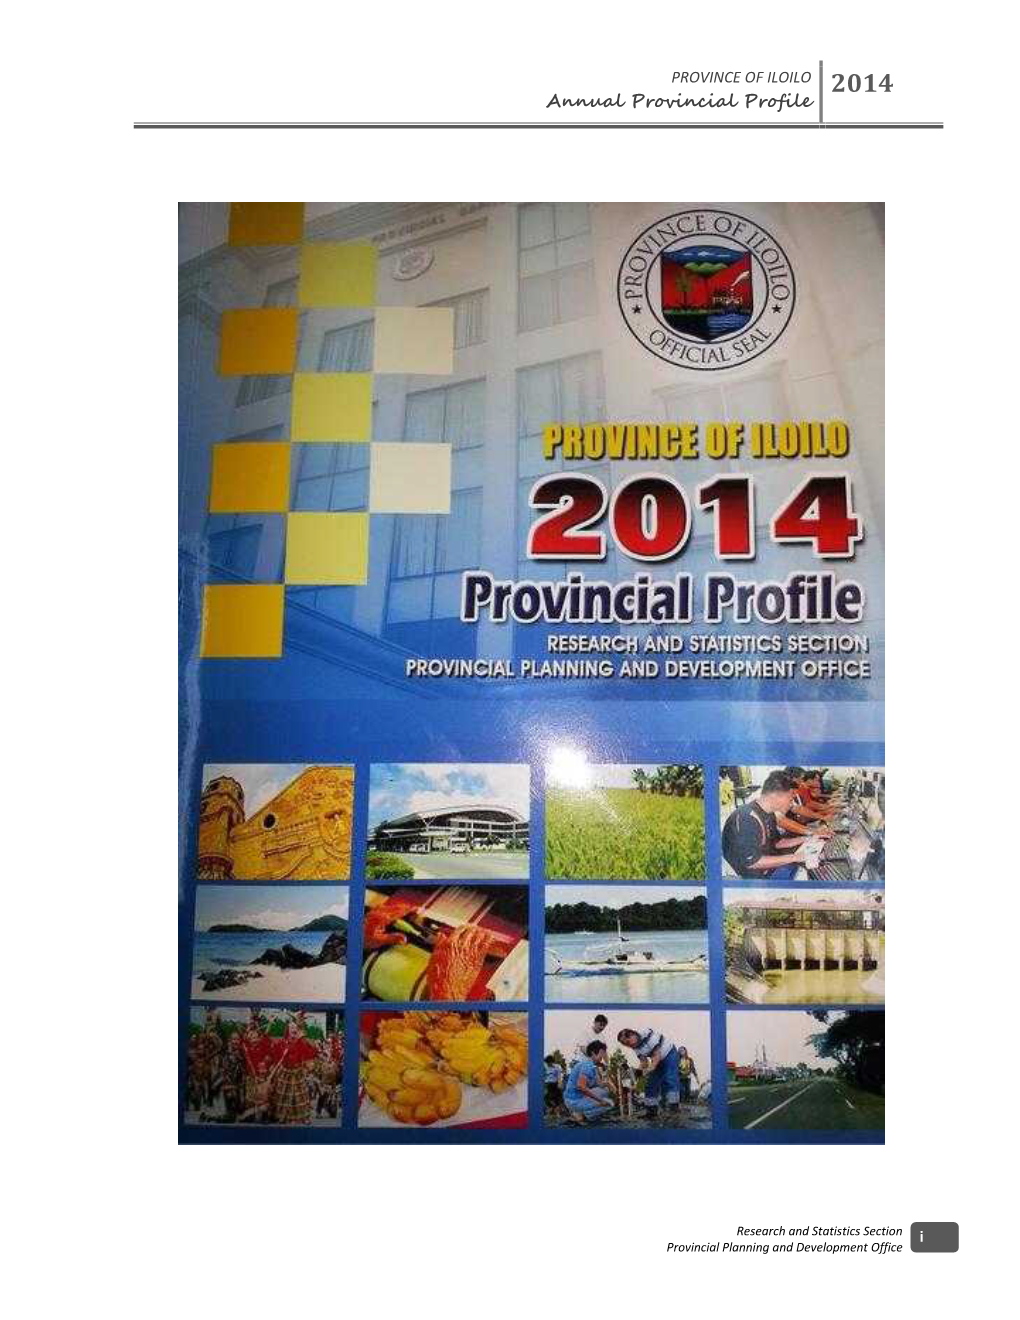 Annual Provincial Profile